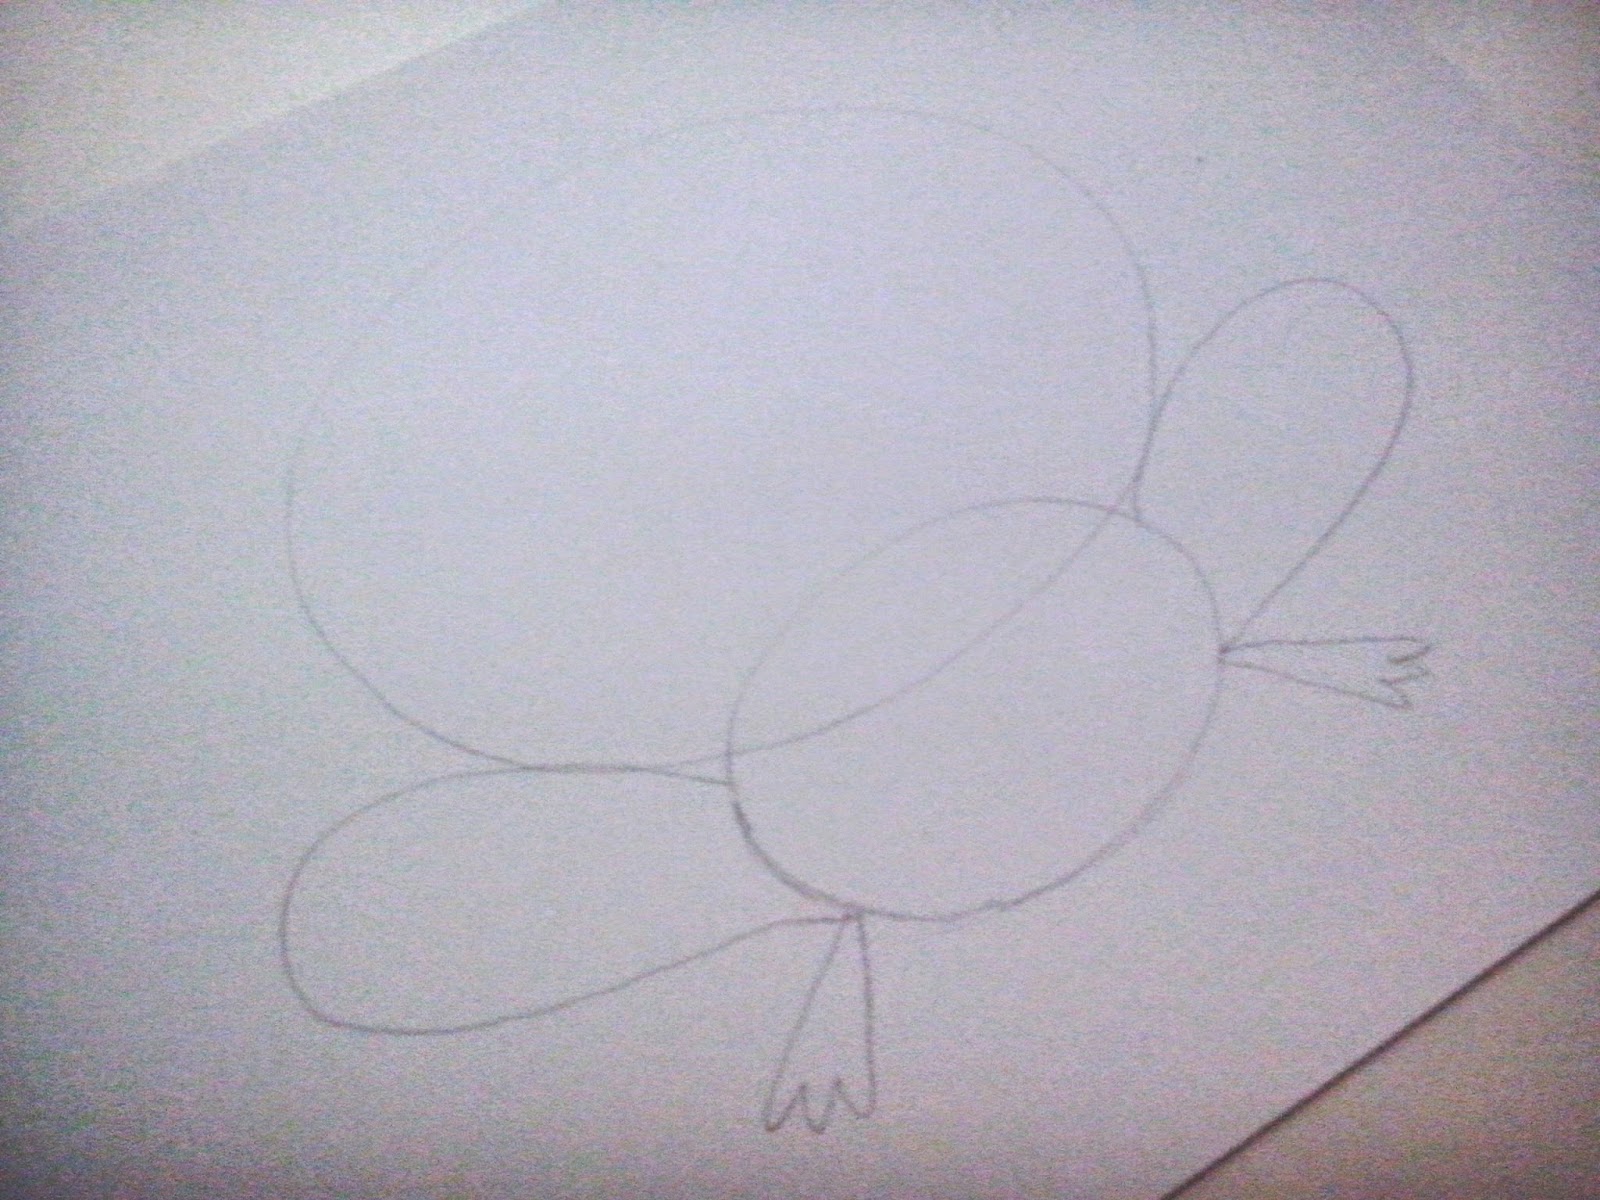 cómo dibujar una rana a partir de círculos